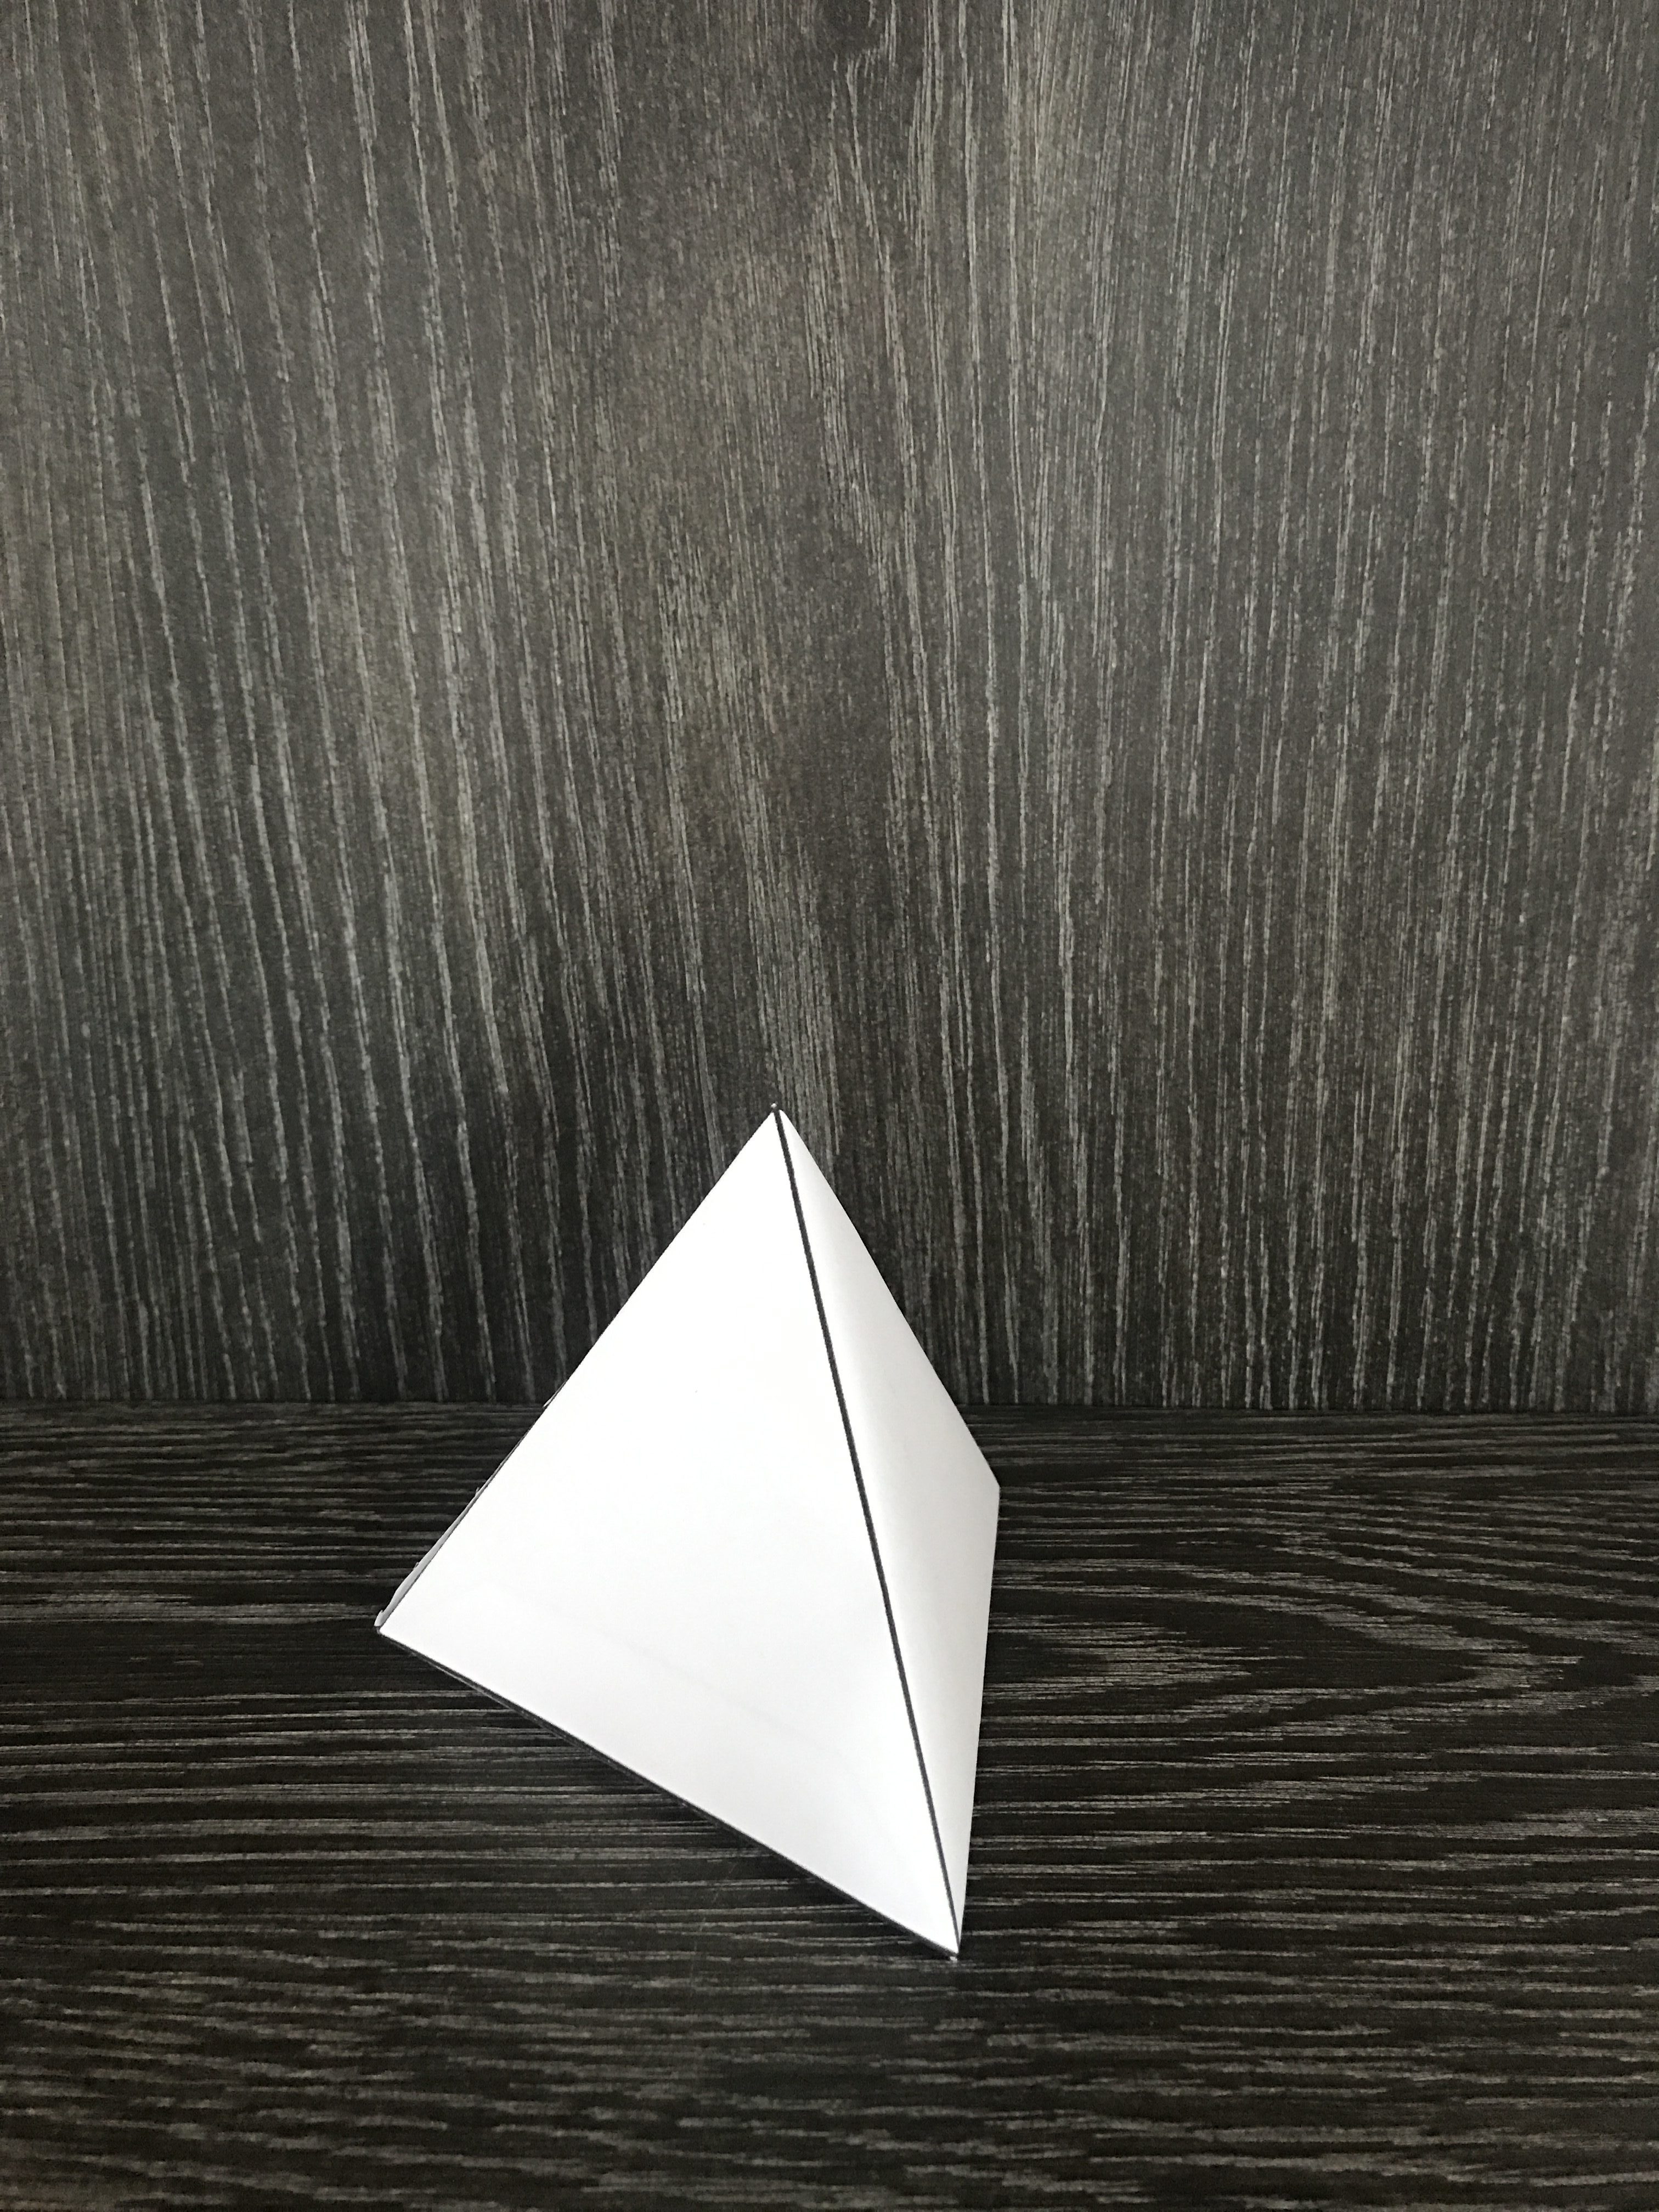 Assignment #7- 3D paper folding